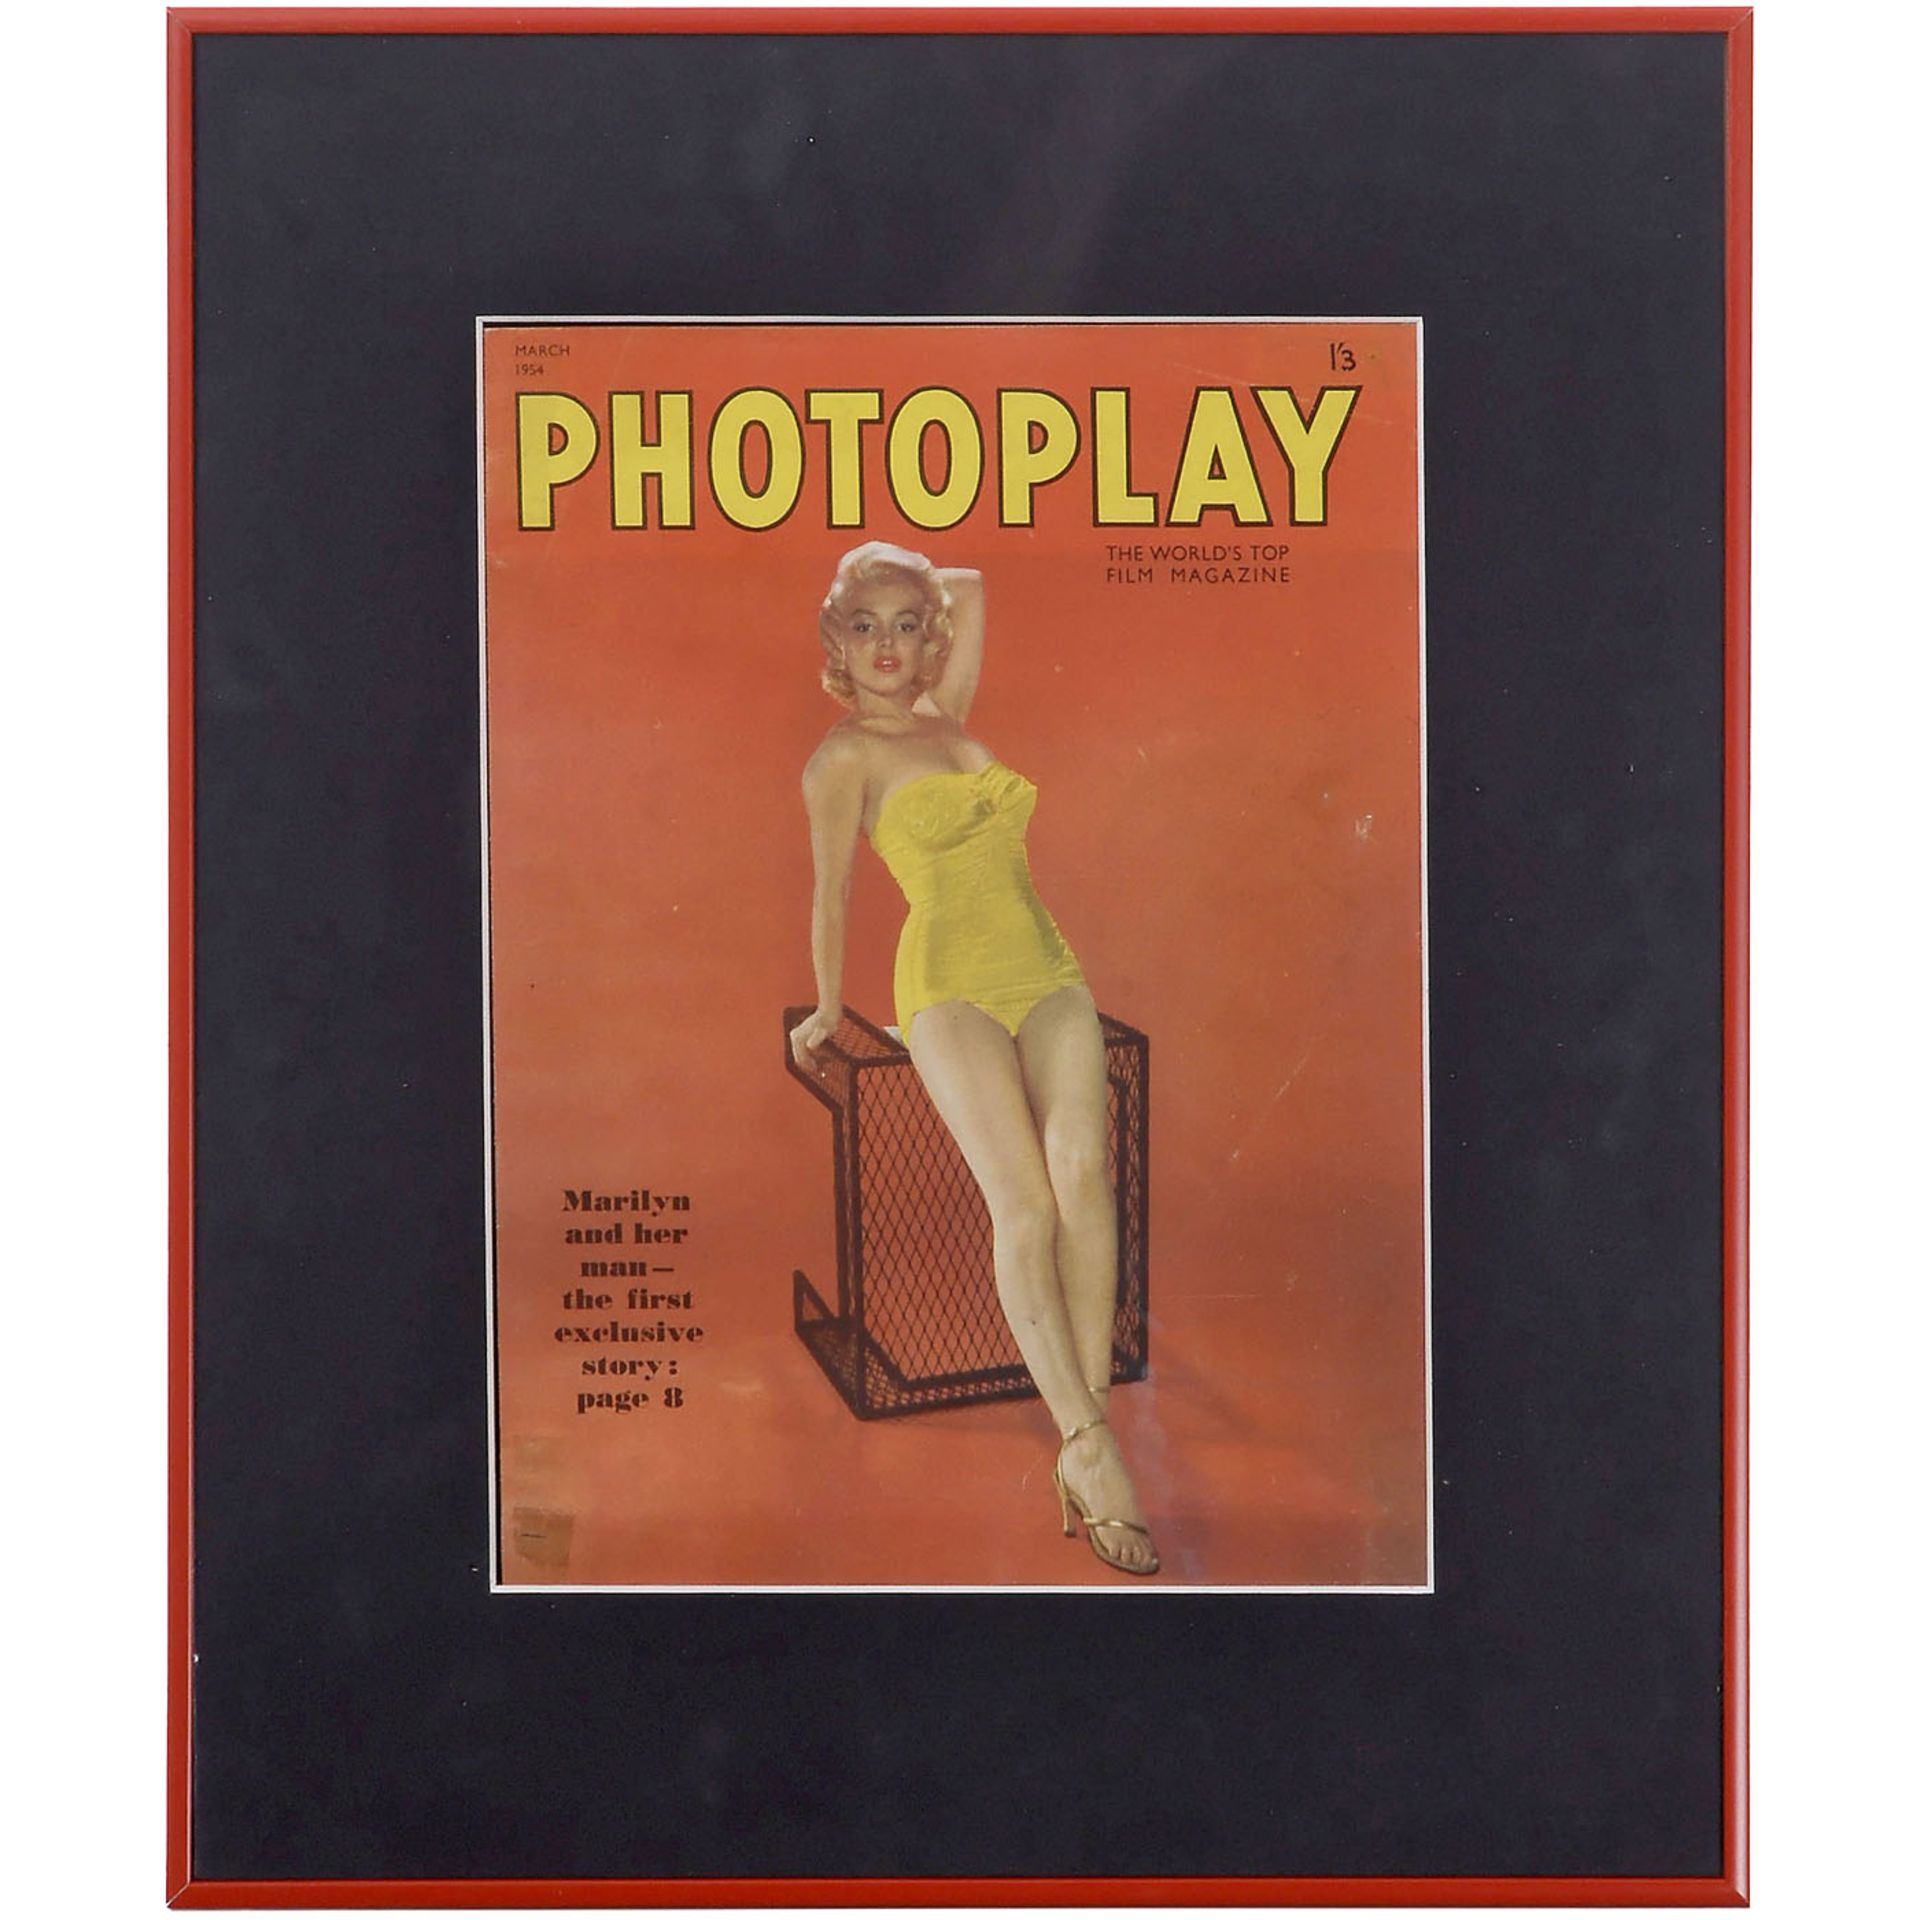 2 Marilyn-Monroe-Photographien und 1 Pin-up, um 19551) Hochglanz-Pressephoto, aufgenommen 1952, - Bild 2 aus 5